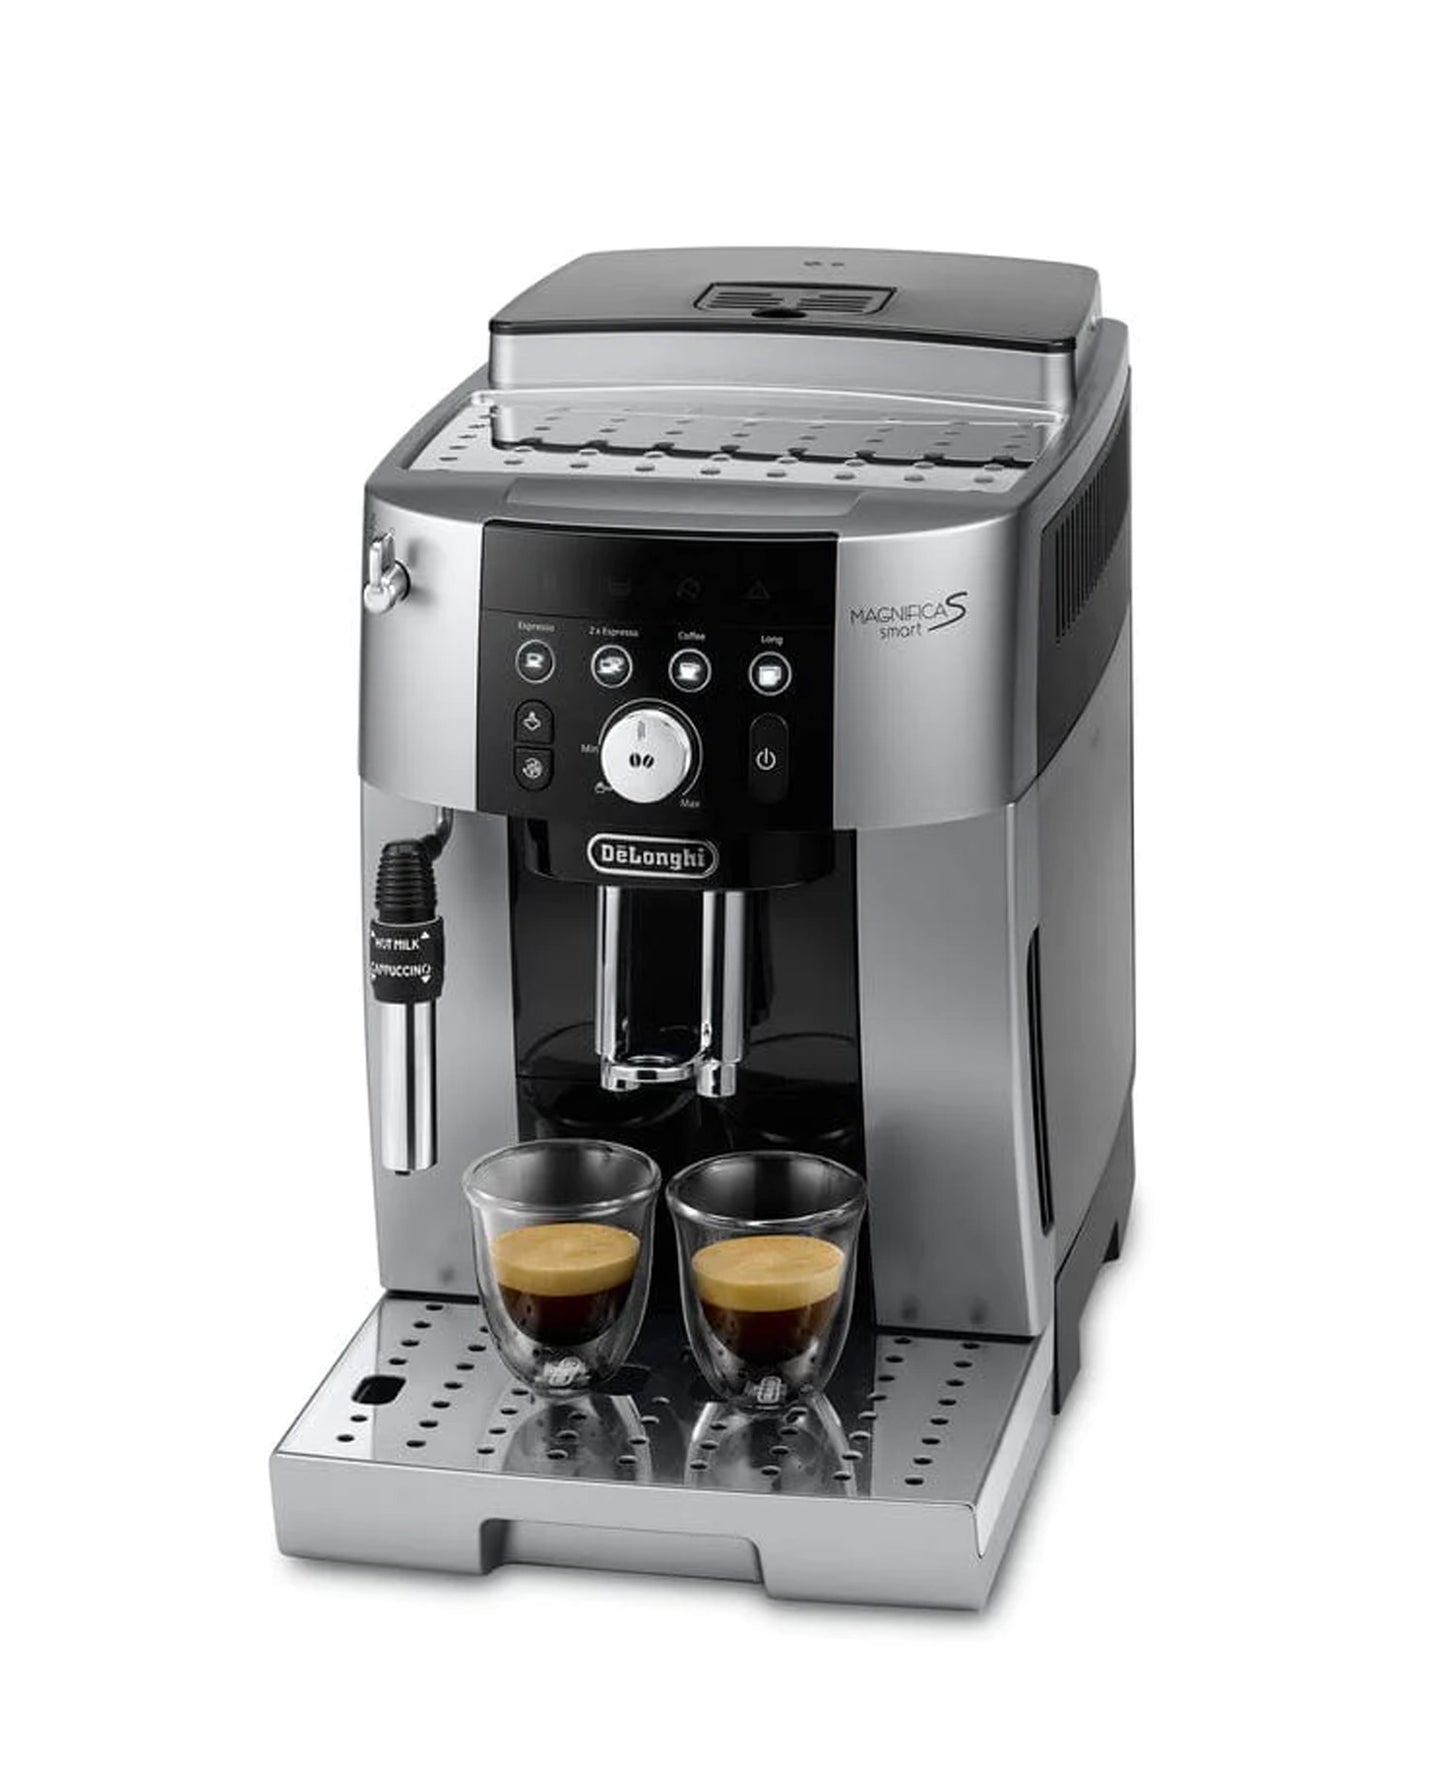 DeLonghi Magnifica S Smart Espresso Machine - Silver & Black